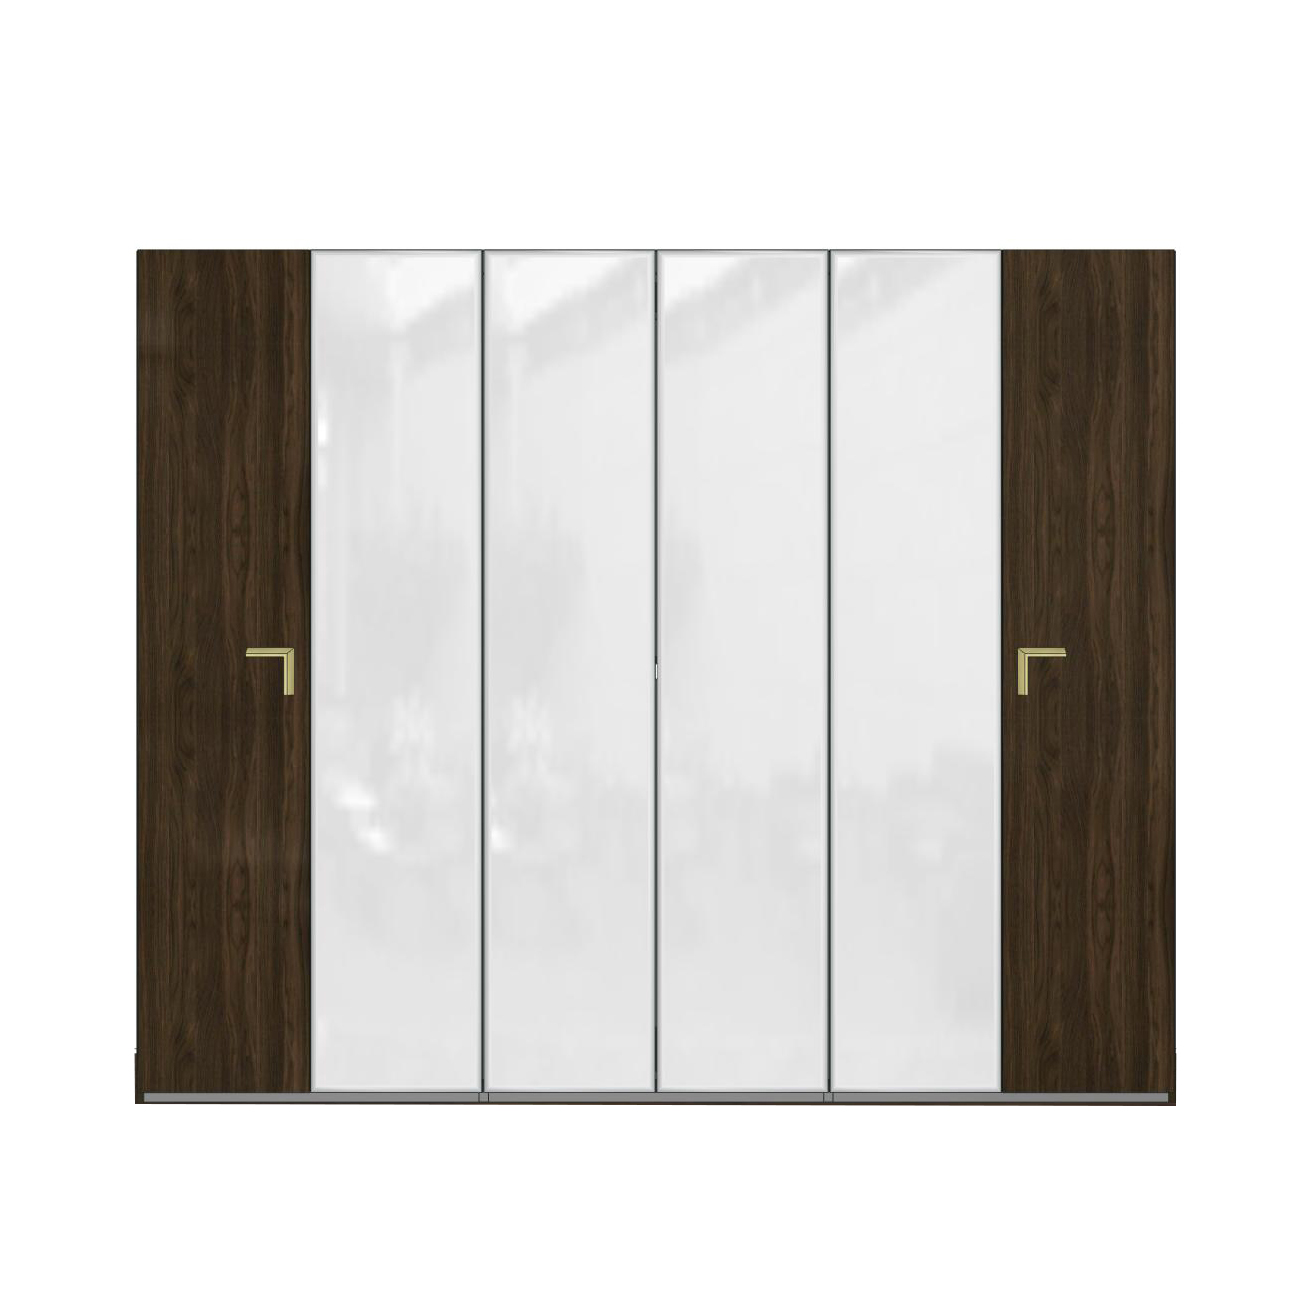 Шкаф платяной Camelgroup Smart Noce Patrizio, 6-х дверный, с зеркалом, цвет: грецкий орех, 278x60x228 см (162AR6.04NP)162AR6.04NP